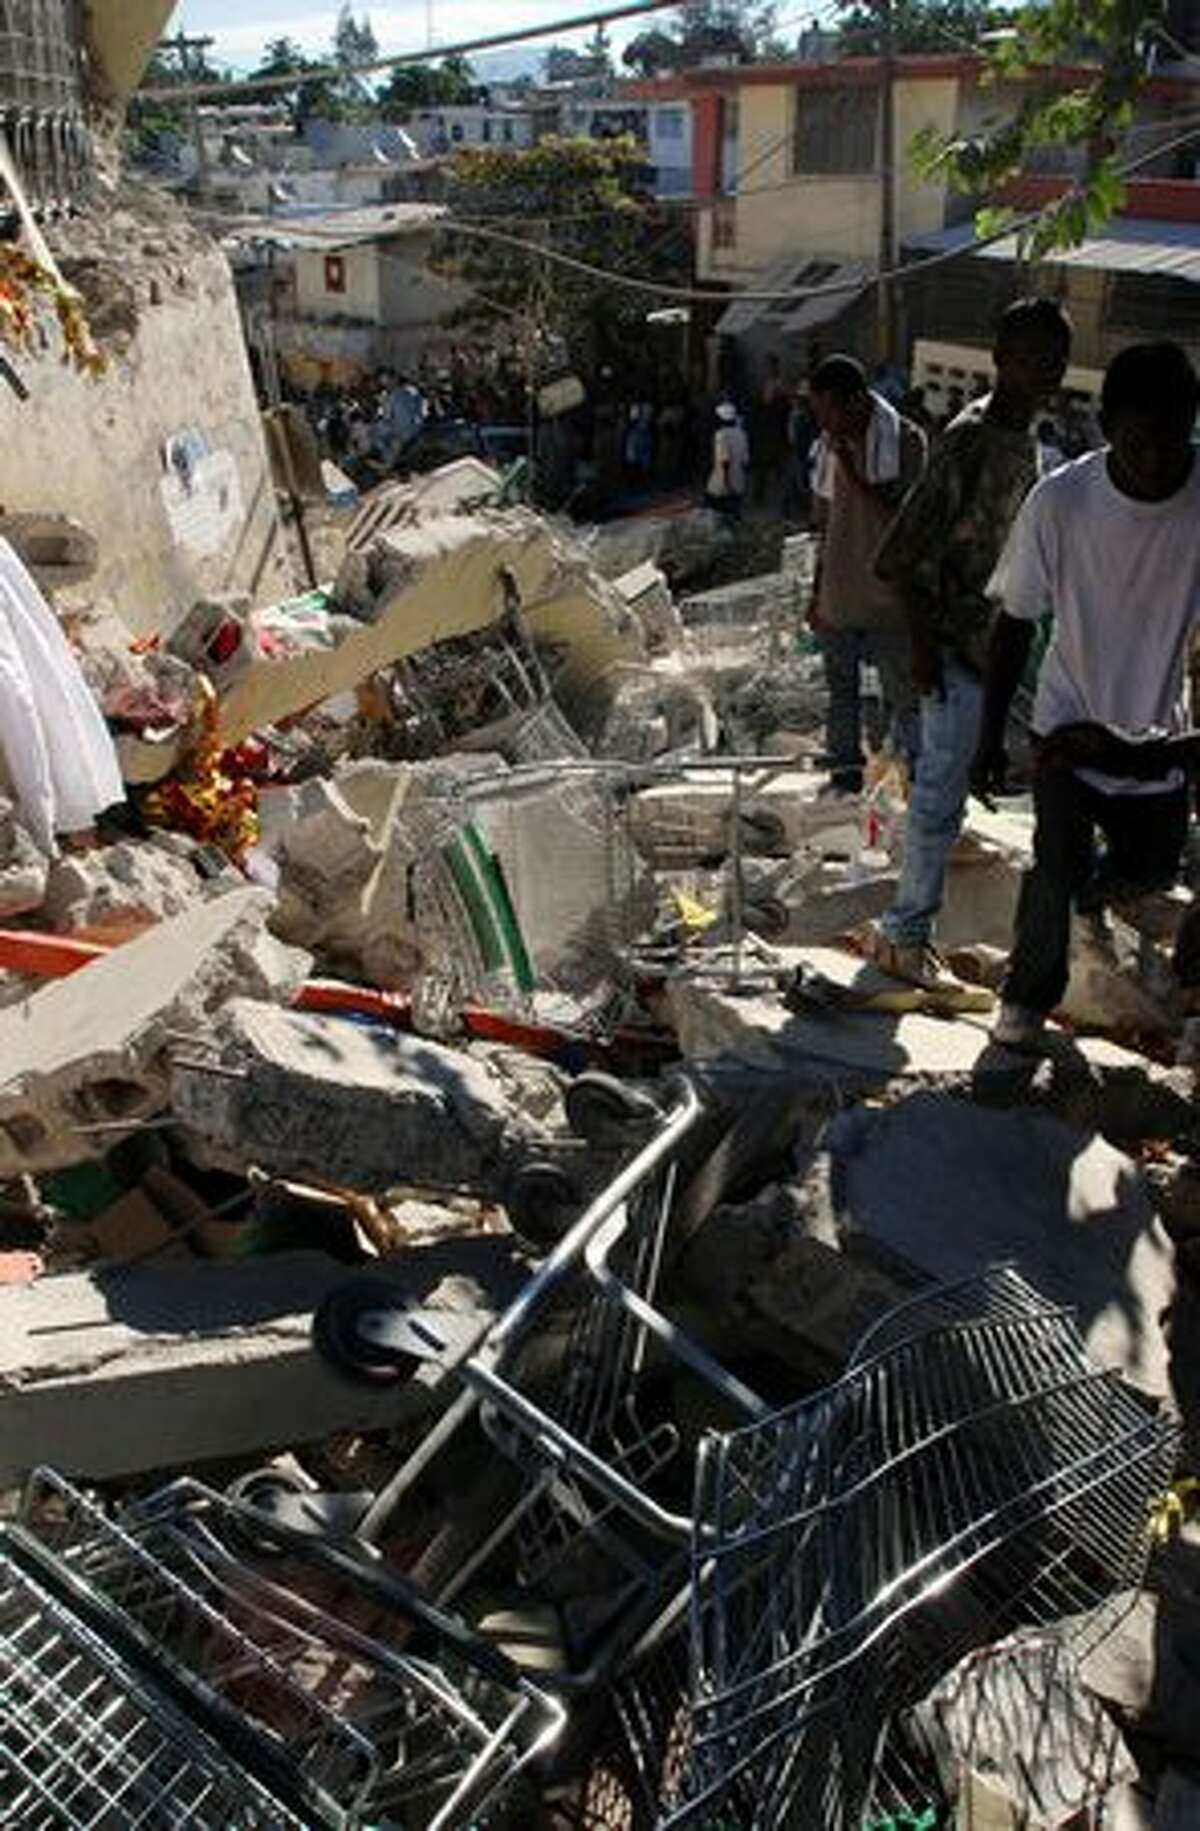 Debris litters a street in Port-au-Prince, Haiti.